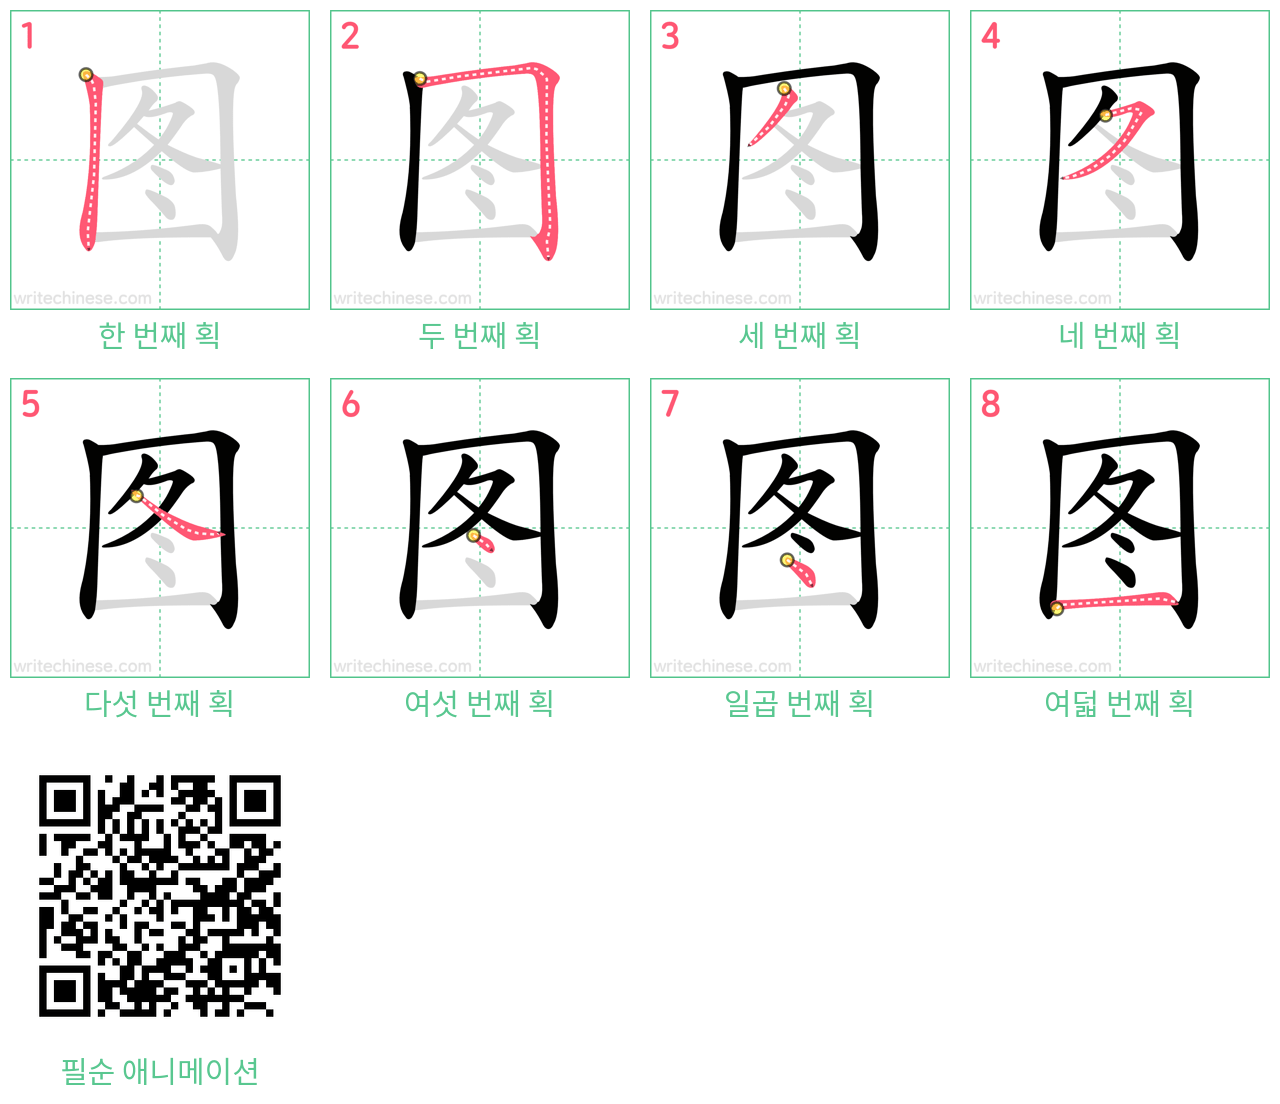 图 step-by-step stroke order diagrams